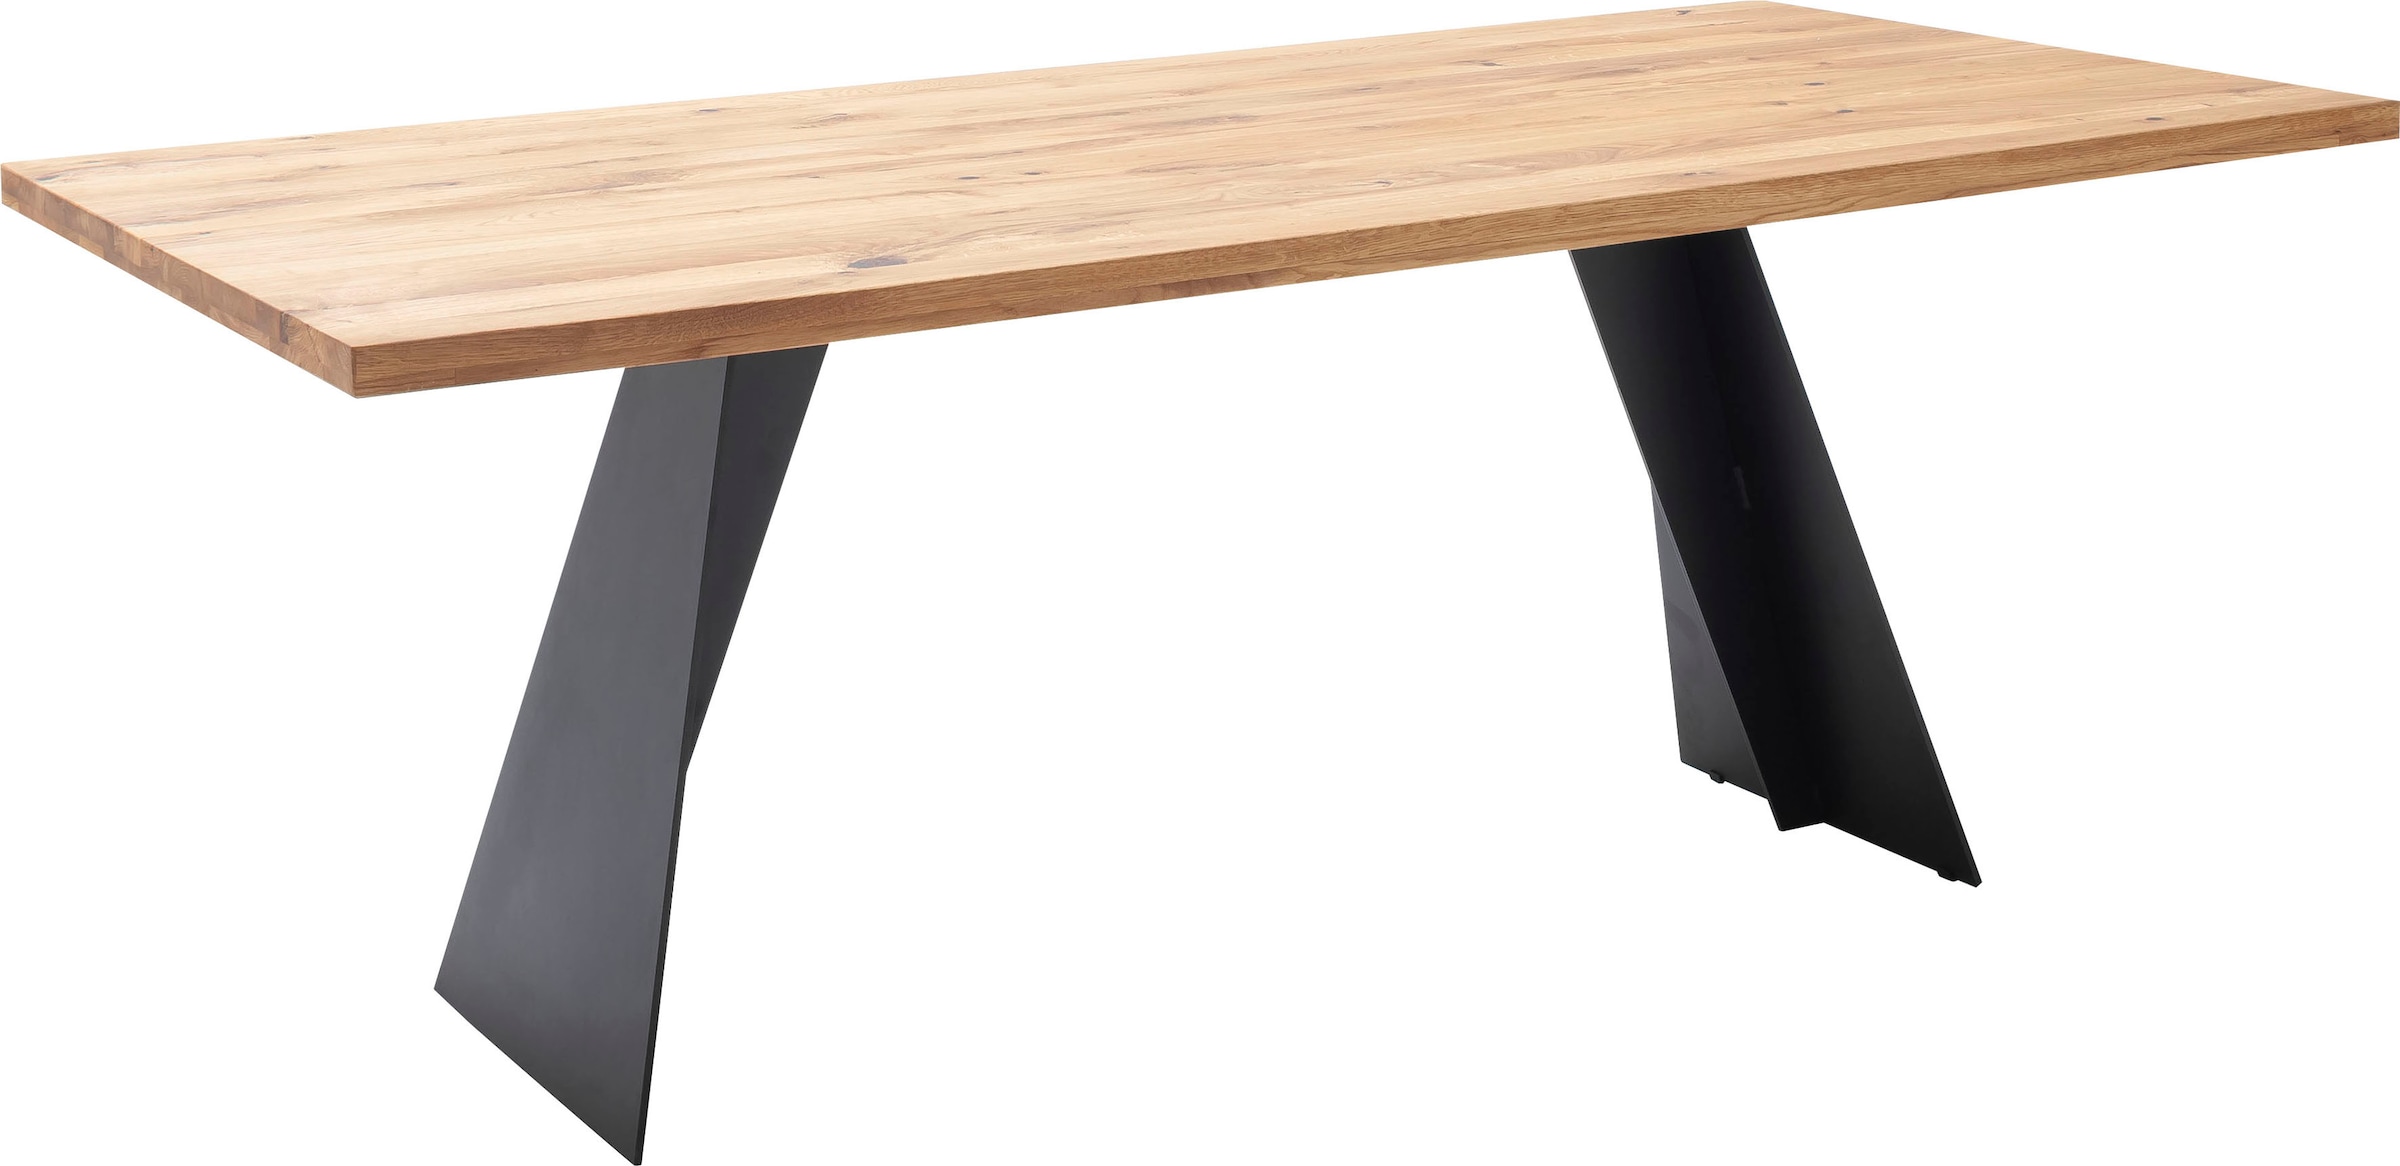 MCA furniture Esstisch FSC-Zertifiziert Massiv in Wildeiche »Goa«, Massivholz Esstisch Tisch, kaufen